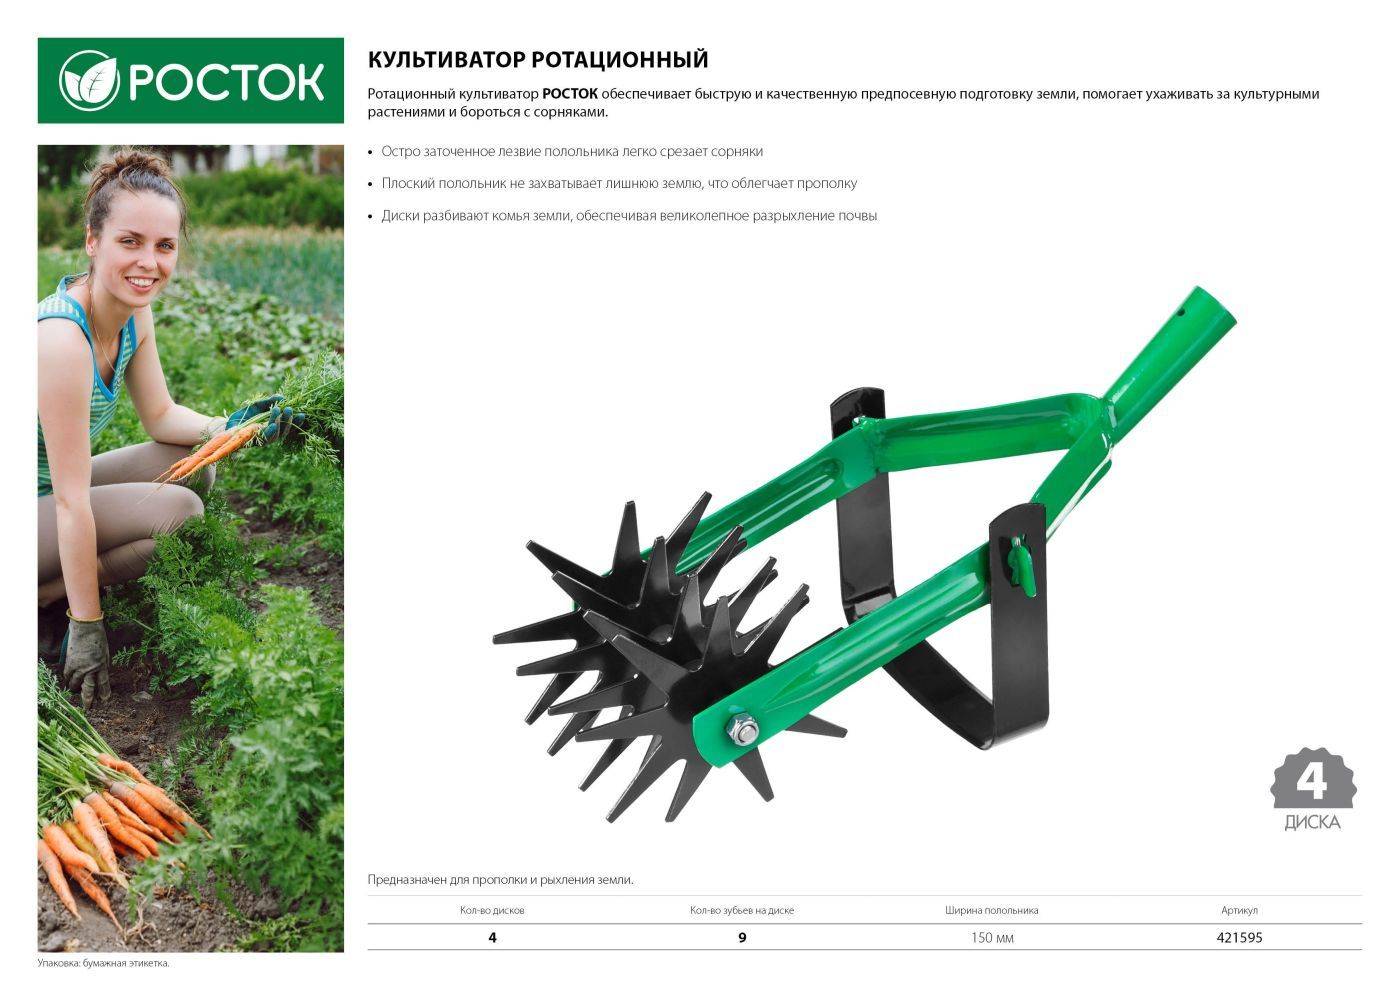 ✅ как работать мотокультиватором - dacktil.ru